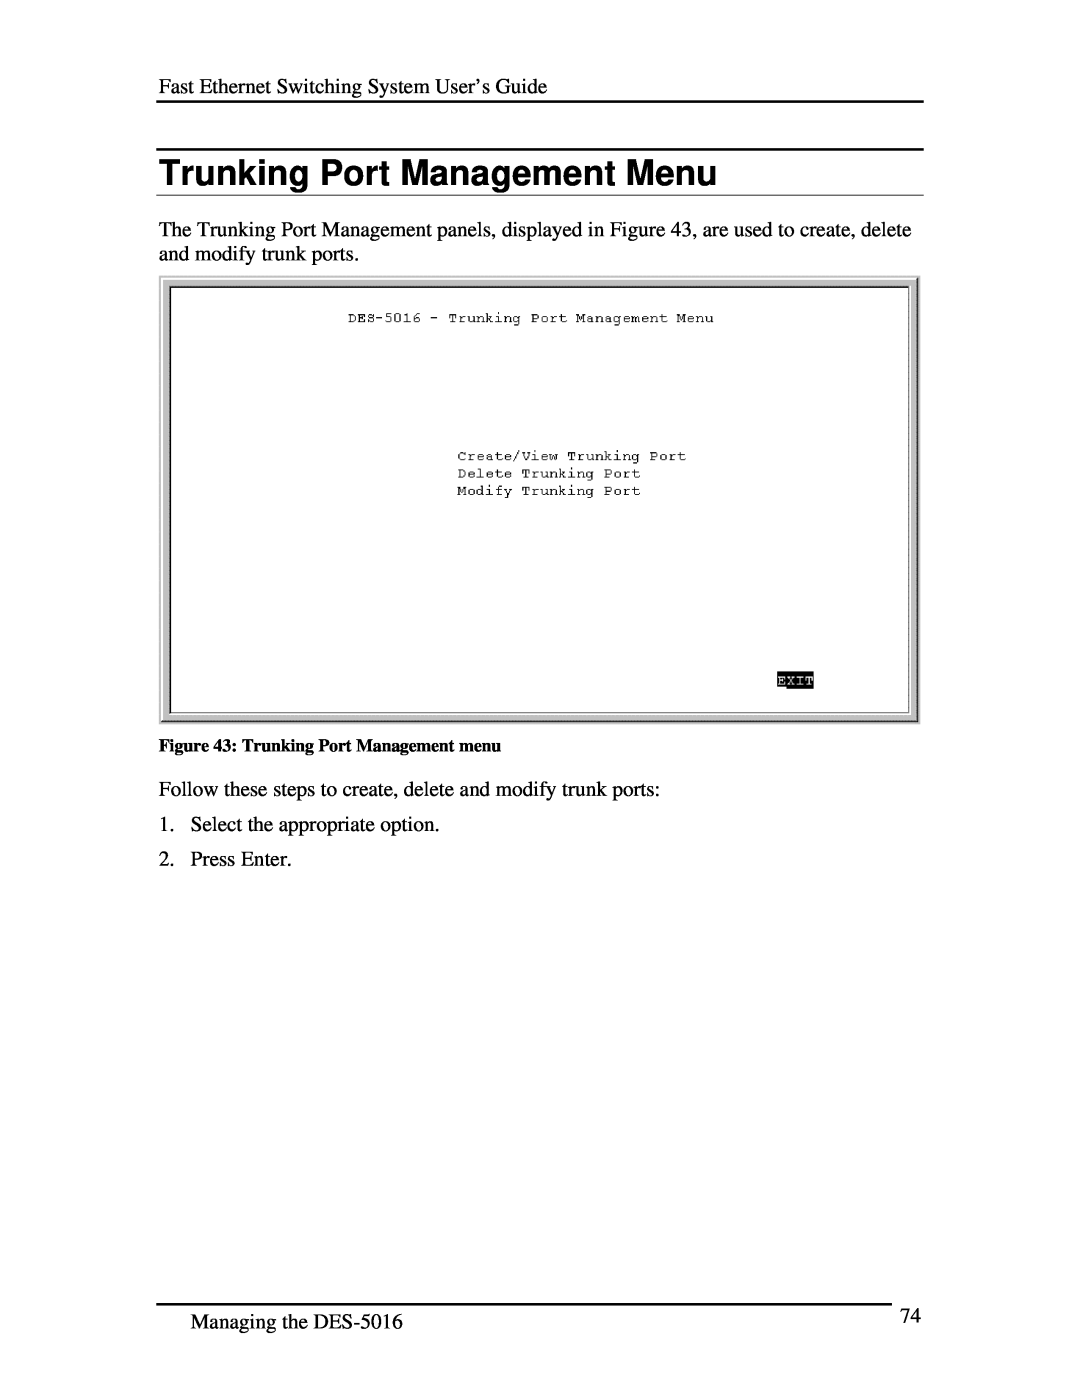 D-Link DES-5016 manual Trunking Port Management Menu, Trunking Port Management menu 